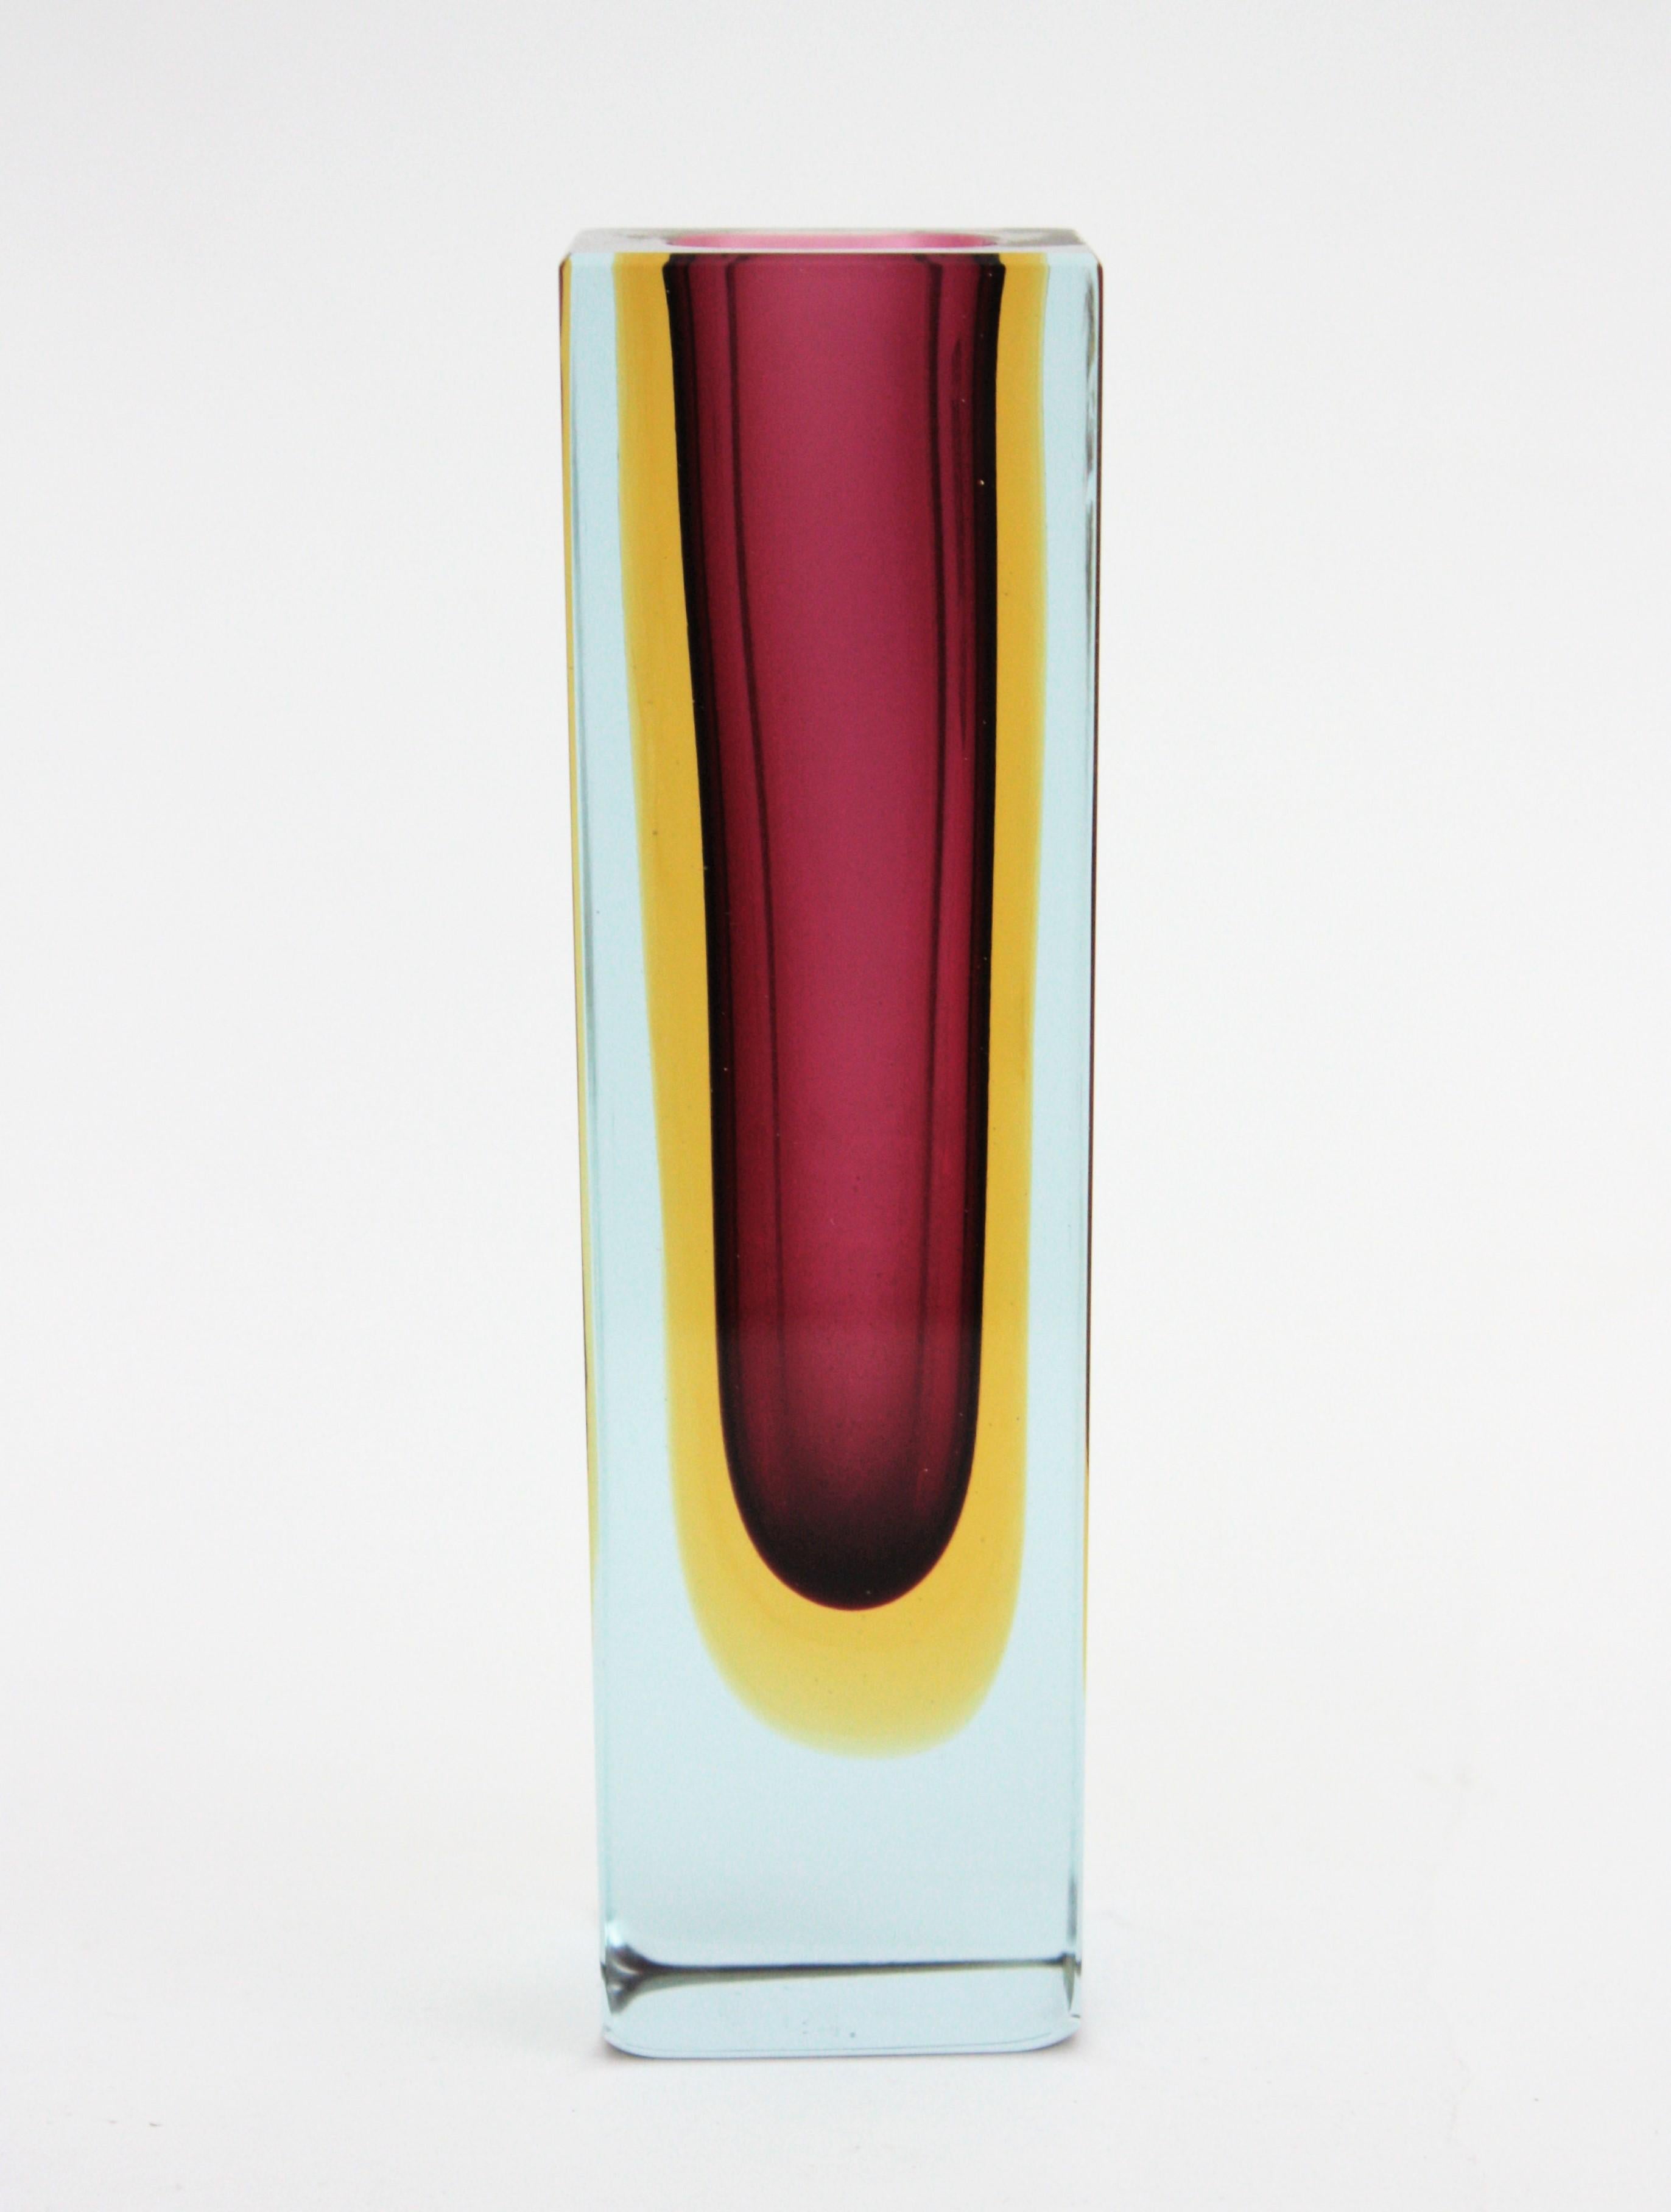 Schöne facettierte Sommerso-Glasvase in lila, gelbem und klarem Glas. Zuschreibung an Flavio Poli für Seguso. Italien, 1960er Jahre.
Burgunder-/violettes Glas mit einer Schicht aus gelbem Glas, das in klares Glas in der Sommerso-Technik getaucht